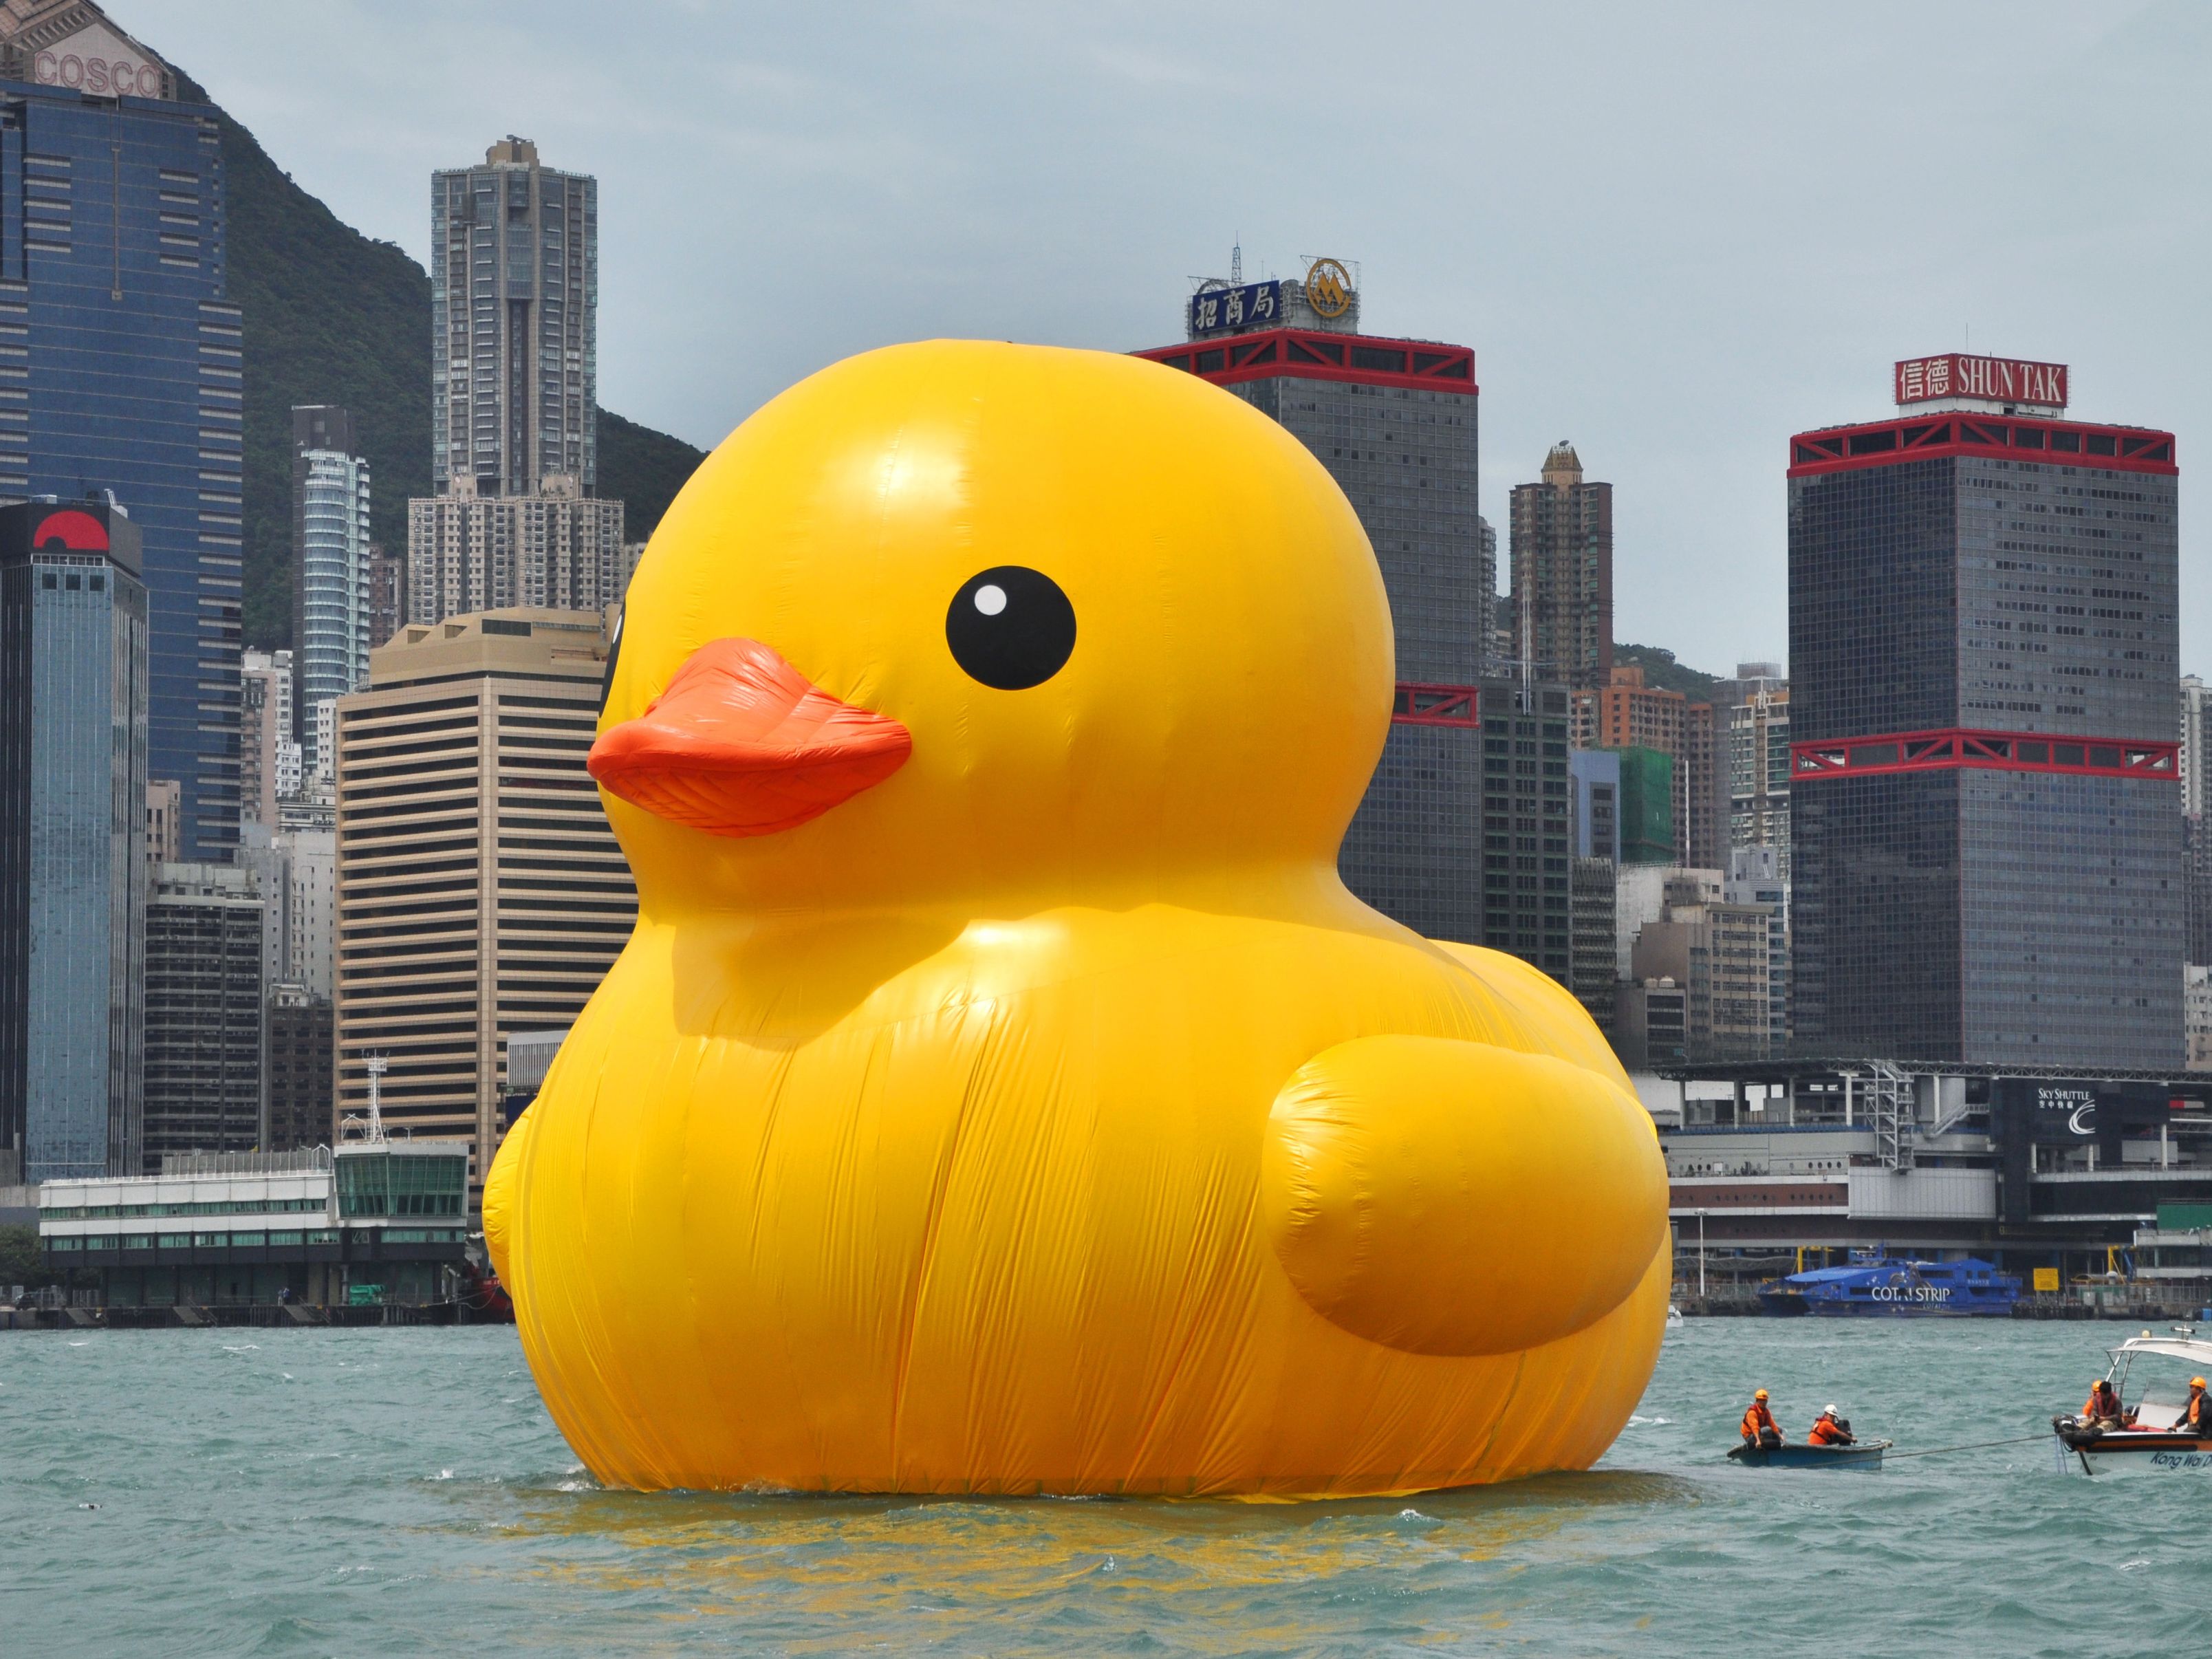 ze Kan worden genegeerd NieuwZeeland Hong Kong giant inflatable rubber duck | CNN